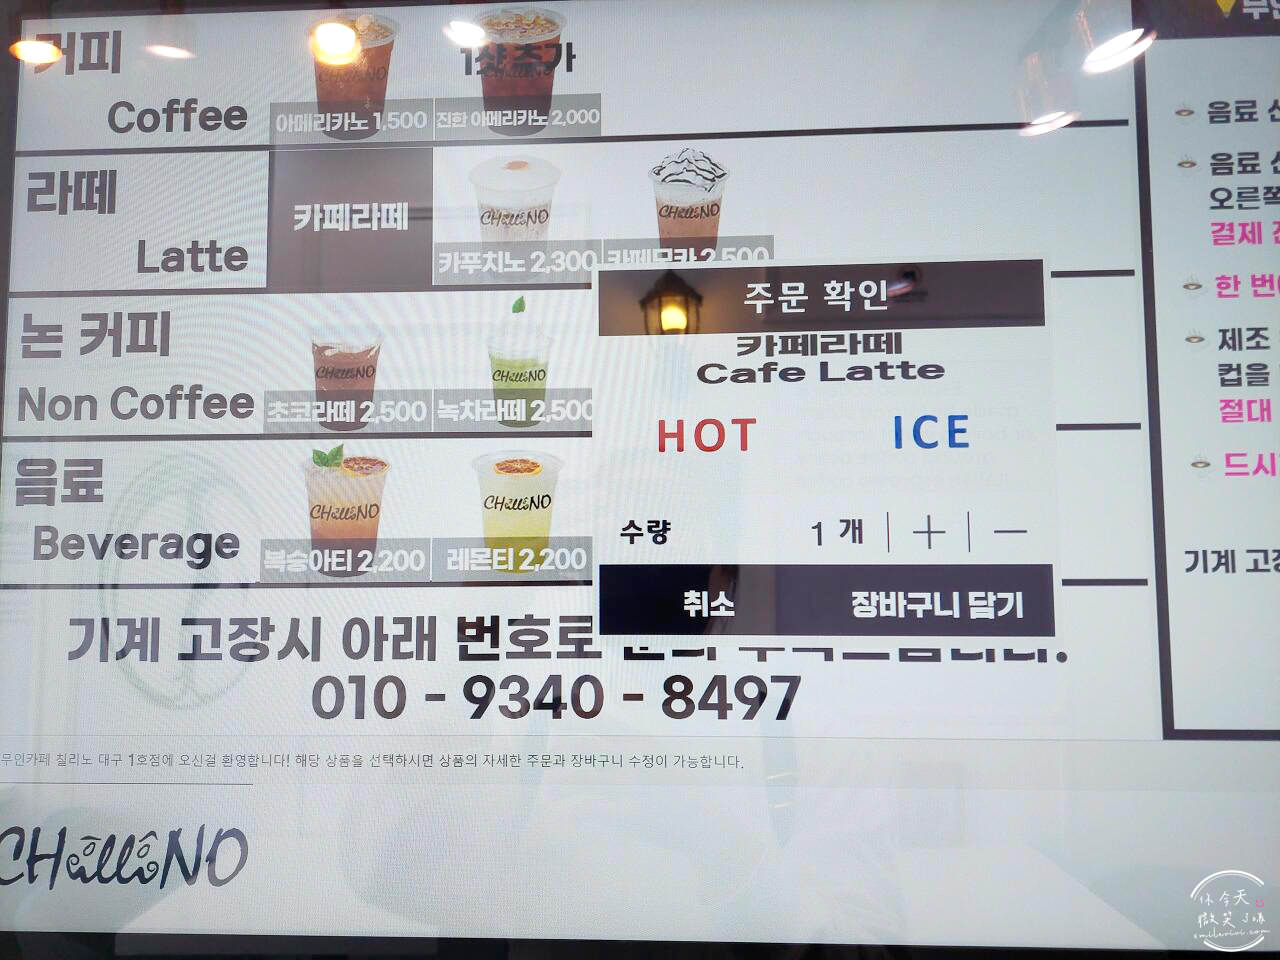 大邱∥CHILLINO 無人咖啡廳連鎖店(무인카페 칠리노)︱24 小時營運便宜咖啡，只能IC卡付款︱全韓國皆有分店︱韓國咖啡廳︱韓國咖啡 12 CHILLINO 11